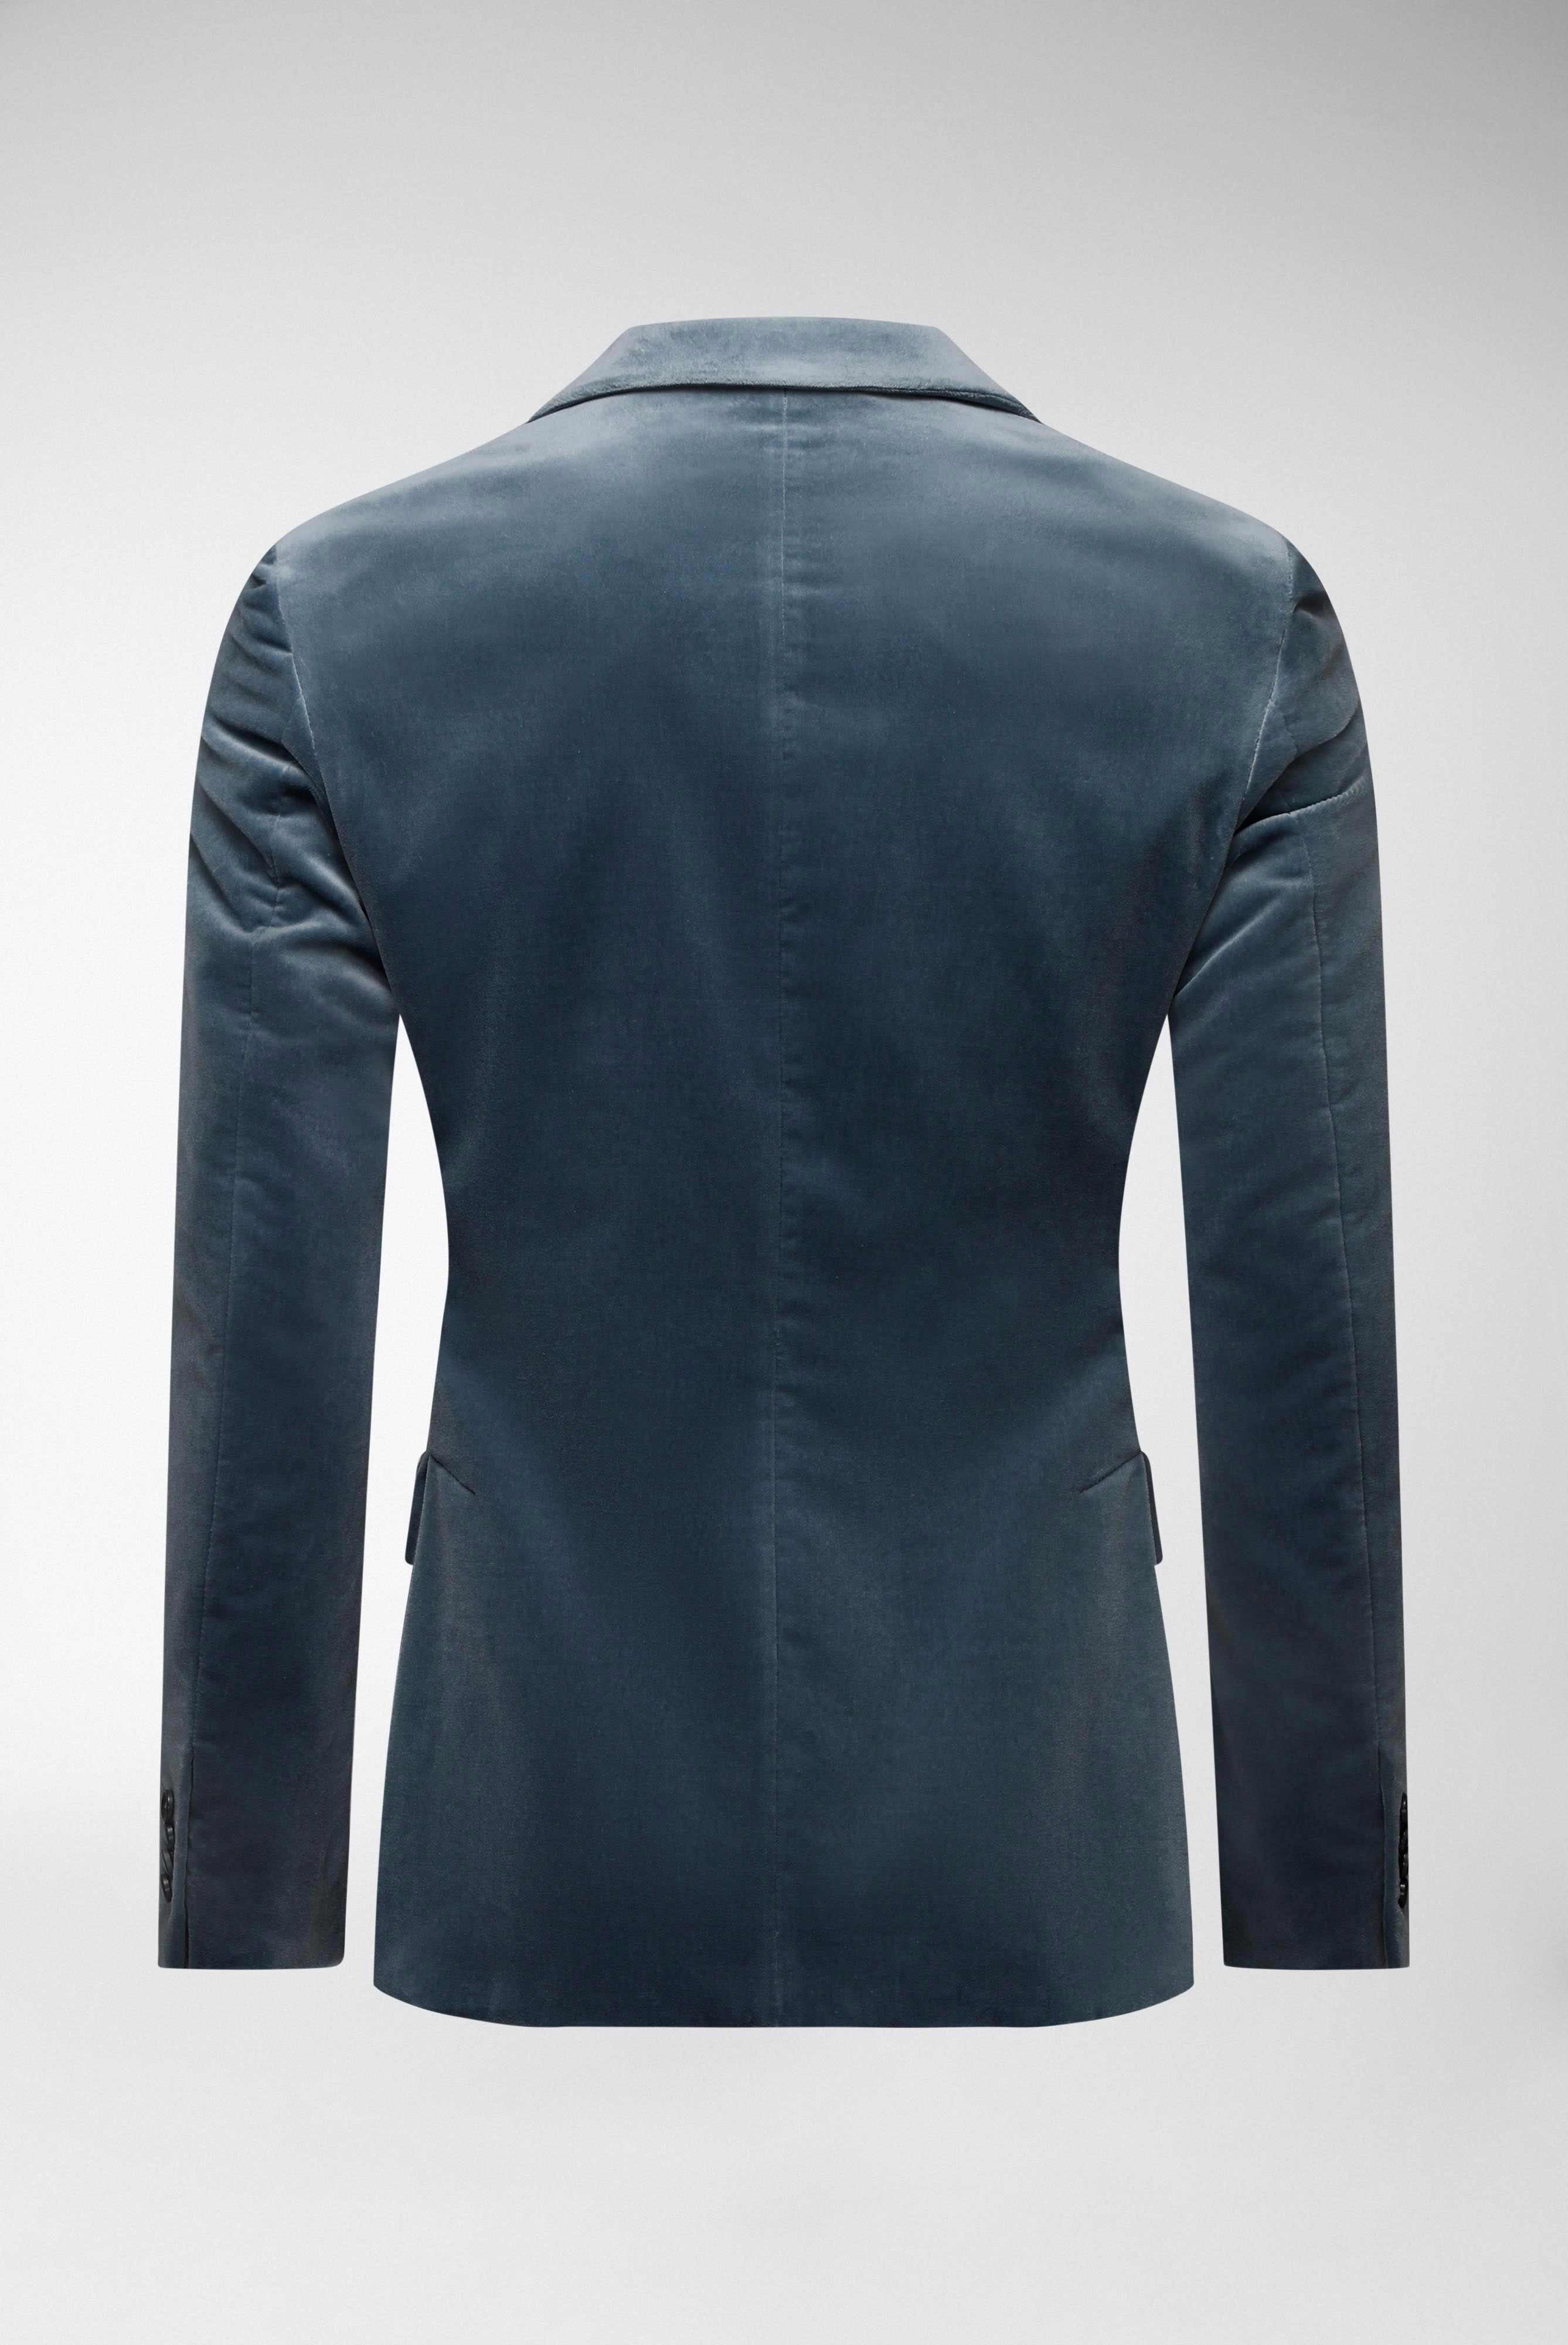 Blazers+Suit Jacket with Peak Lapels+20.7745..H00847.740.48